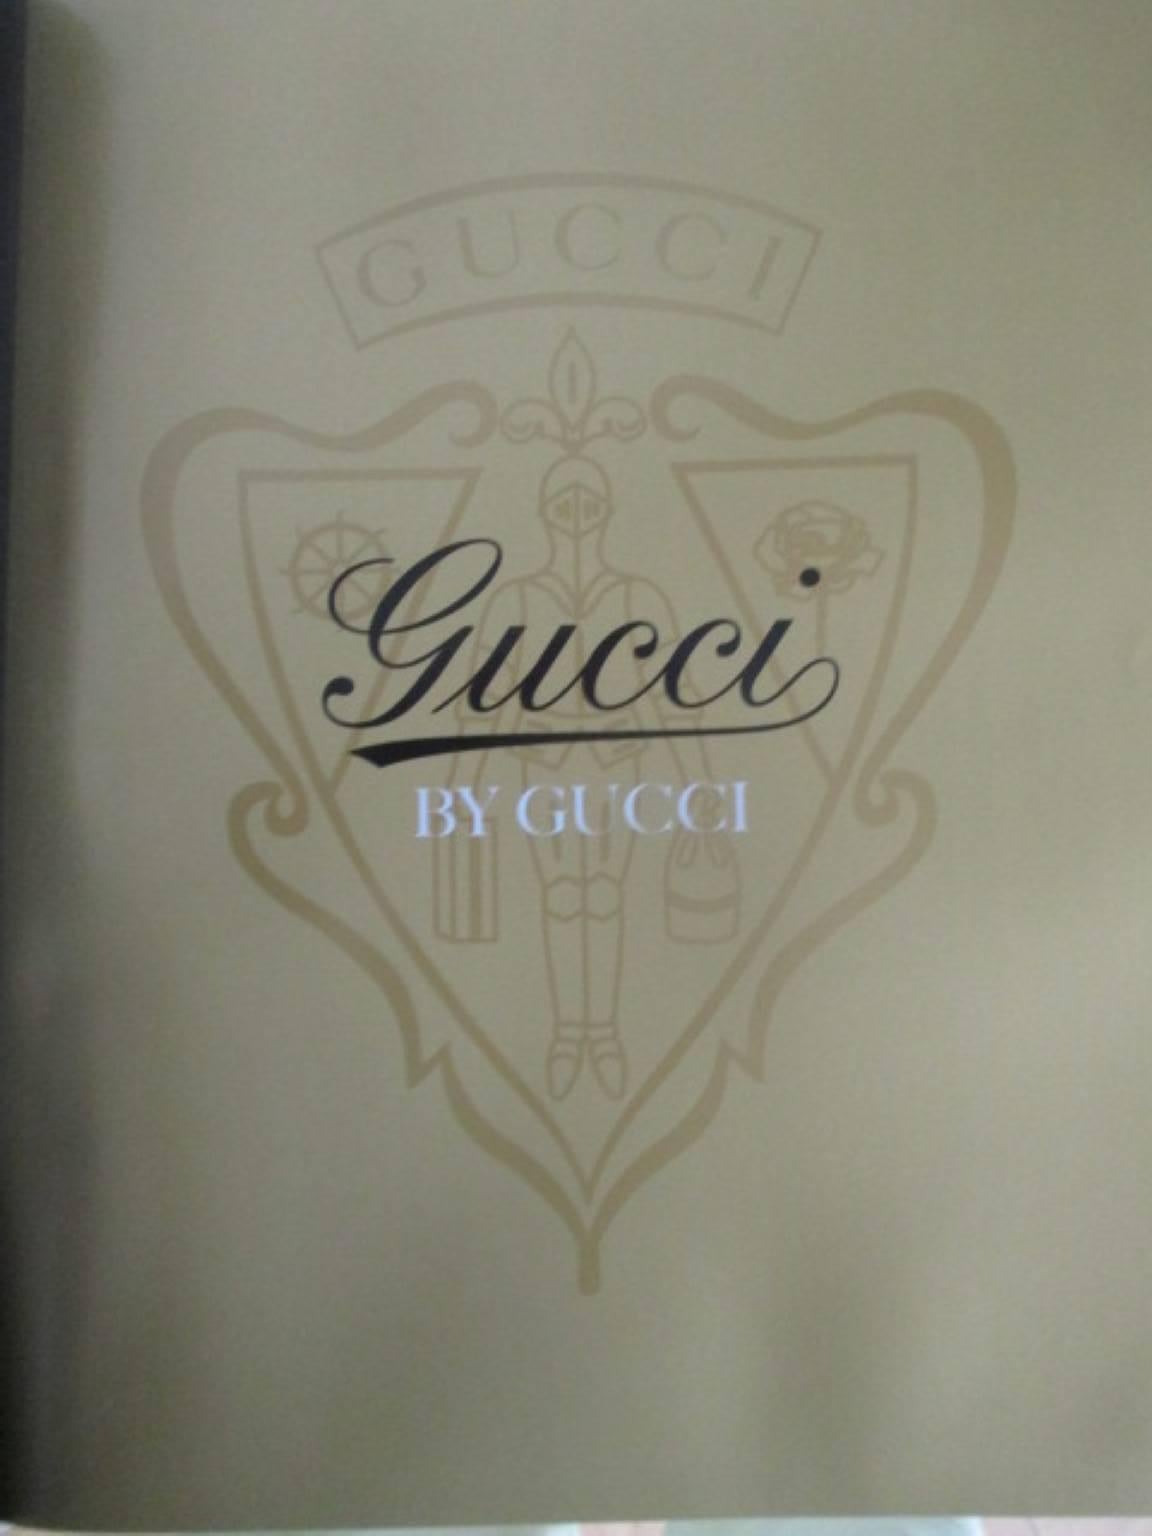 Buch von Gucci von Gucci 85 Jahre Gucci Limited Edition:: 2006 (Grau)